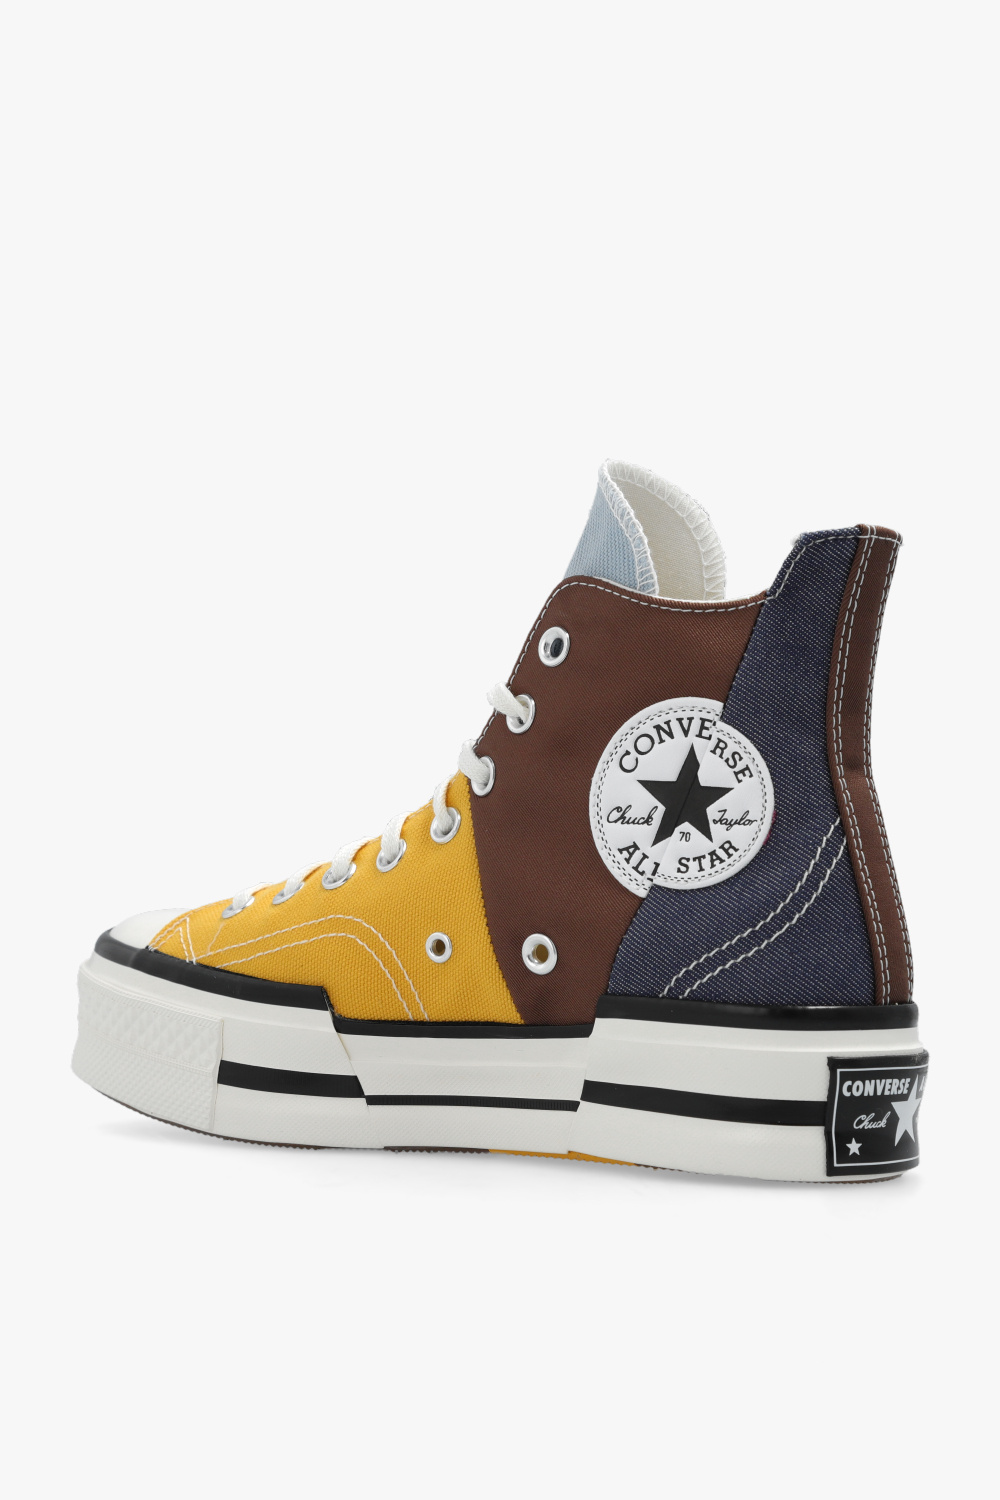 Louis vuitton converse shoes size 37.5 uk size 5